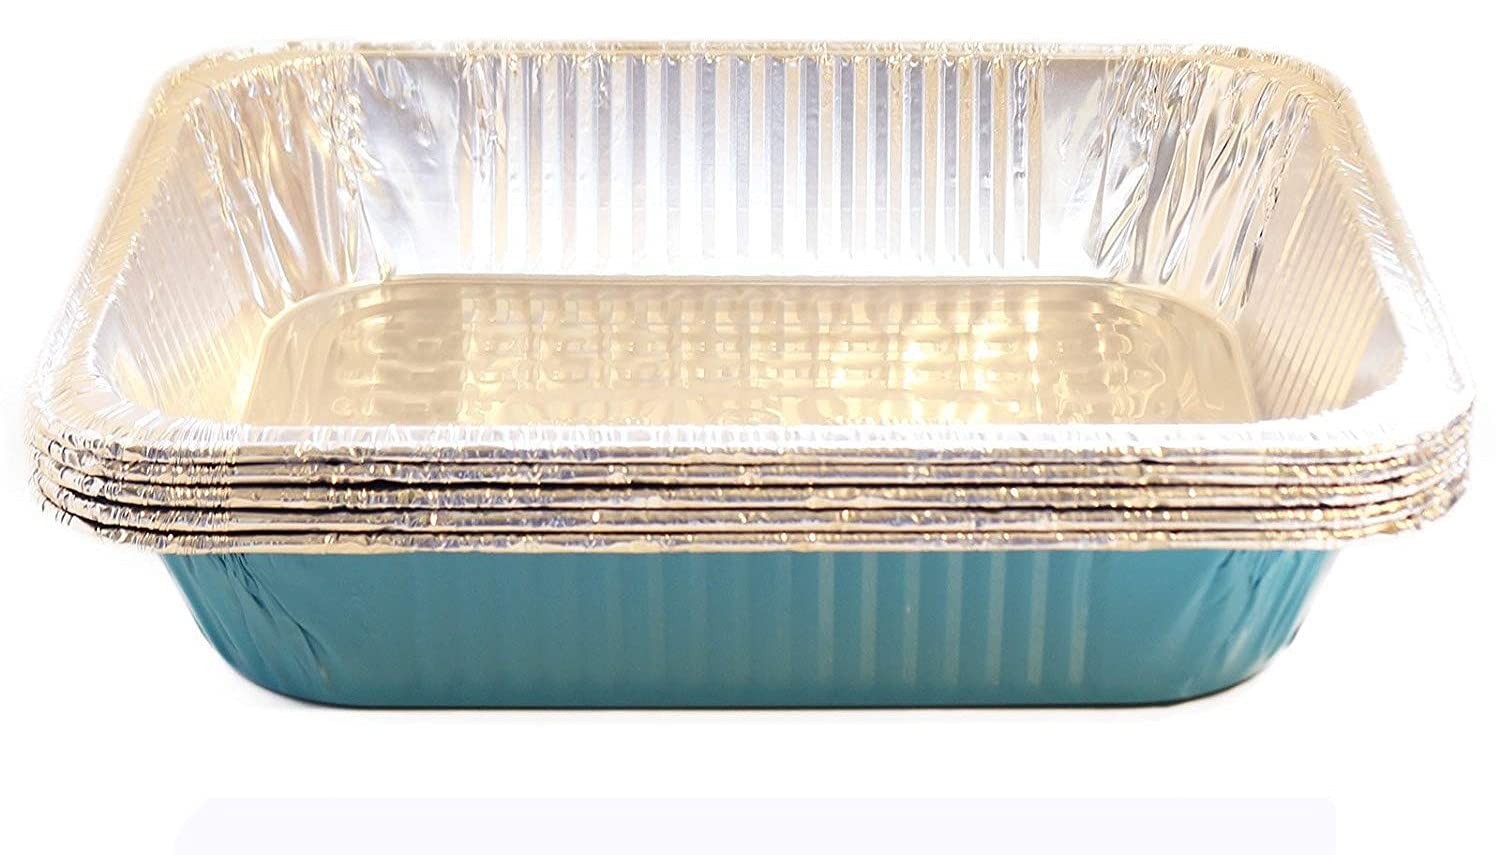 TigerChef Carribean Blue Disposable Full Size Aluminum Foil Steam Table Pans - 5 pcs